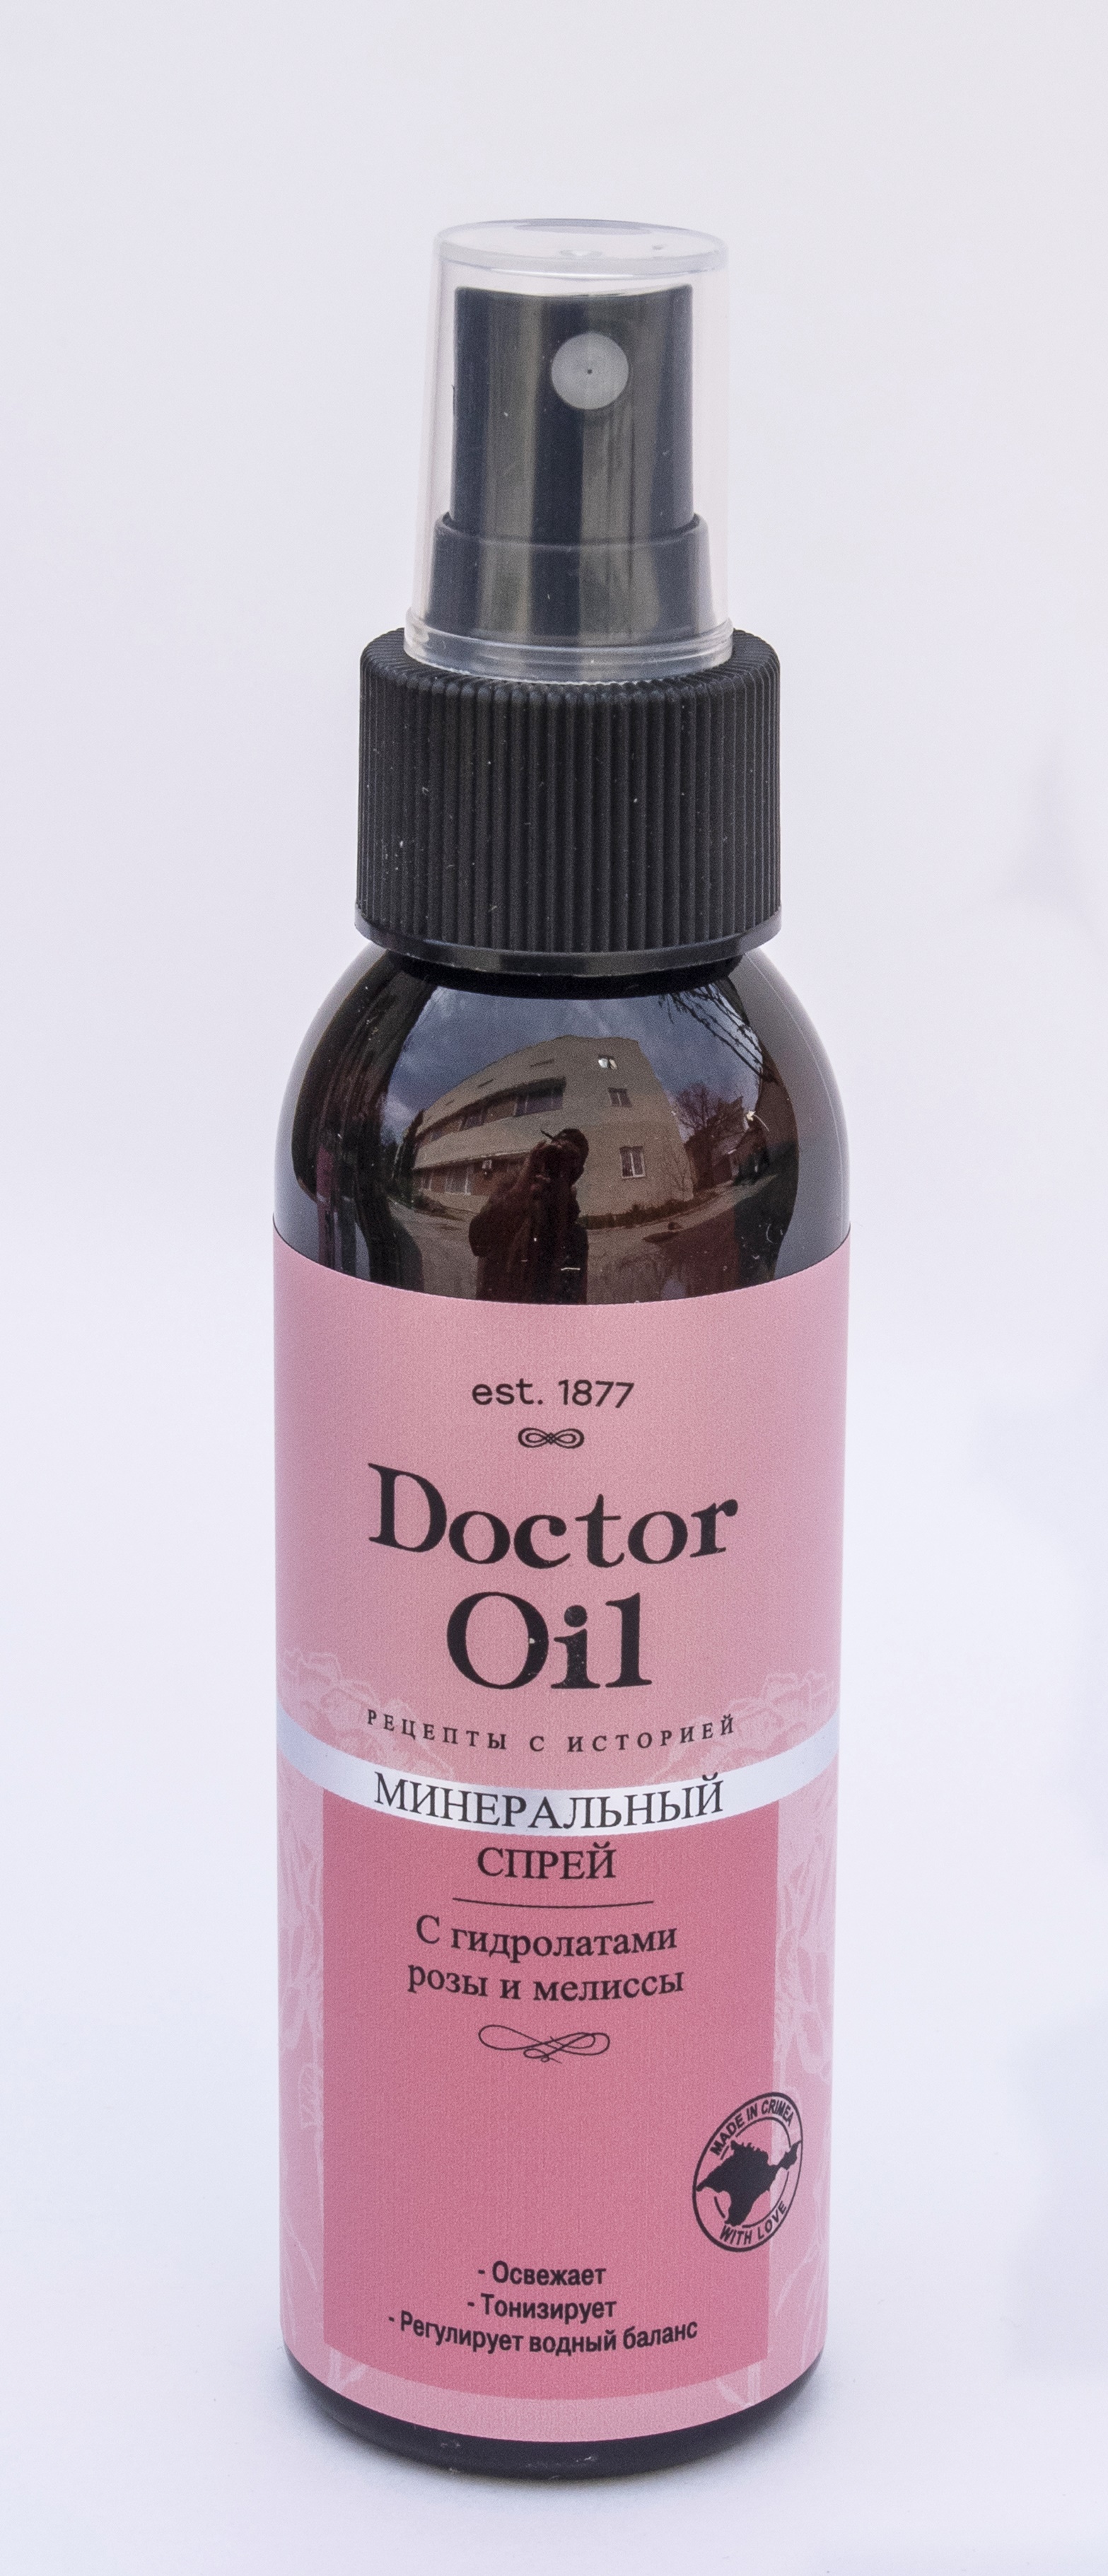 Doctor Oil Минеральный спрей для лица с гидролатами Розы и мелиссы 100 мл.